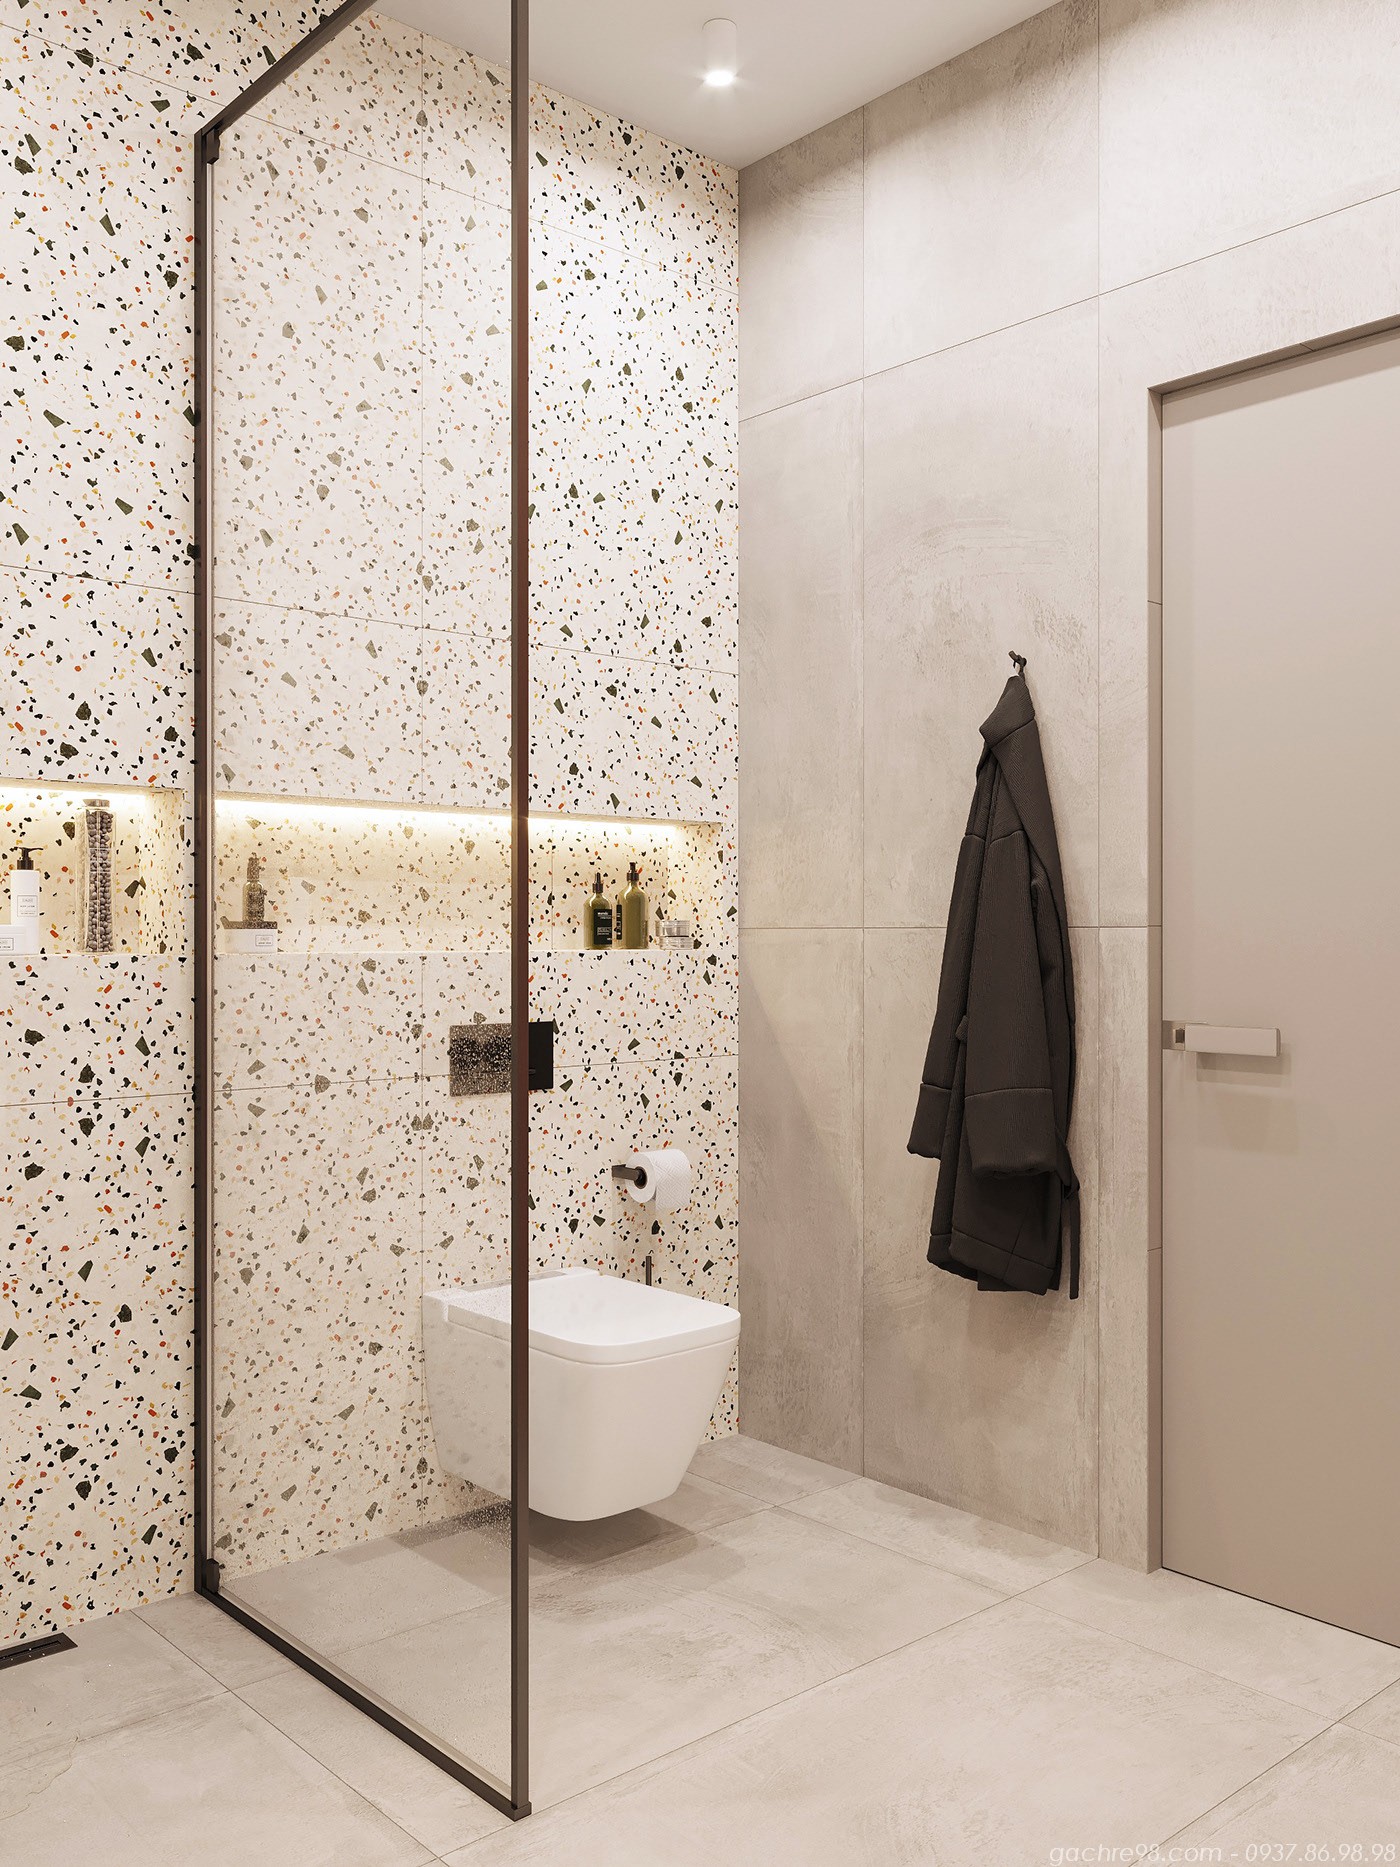 Gạch terrazoo là một lựa chọn hoàn hảo cho việc trang trí phòng tắm